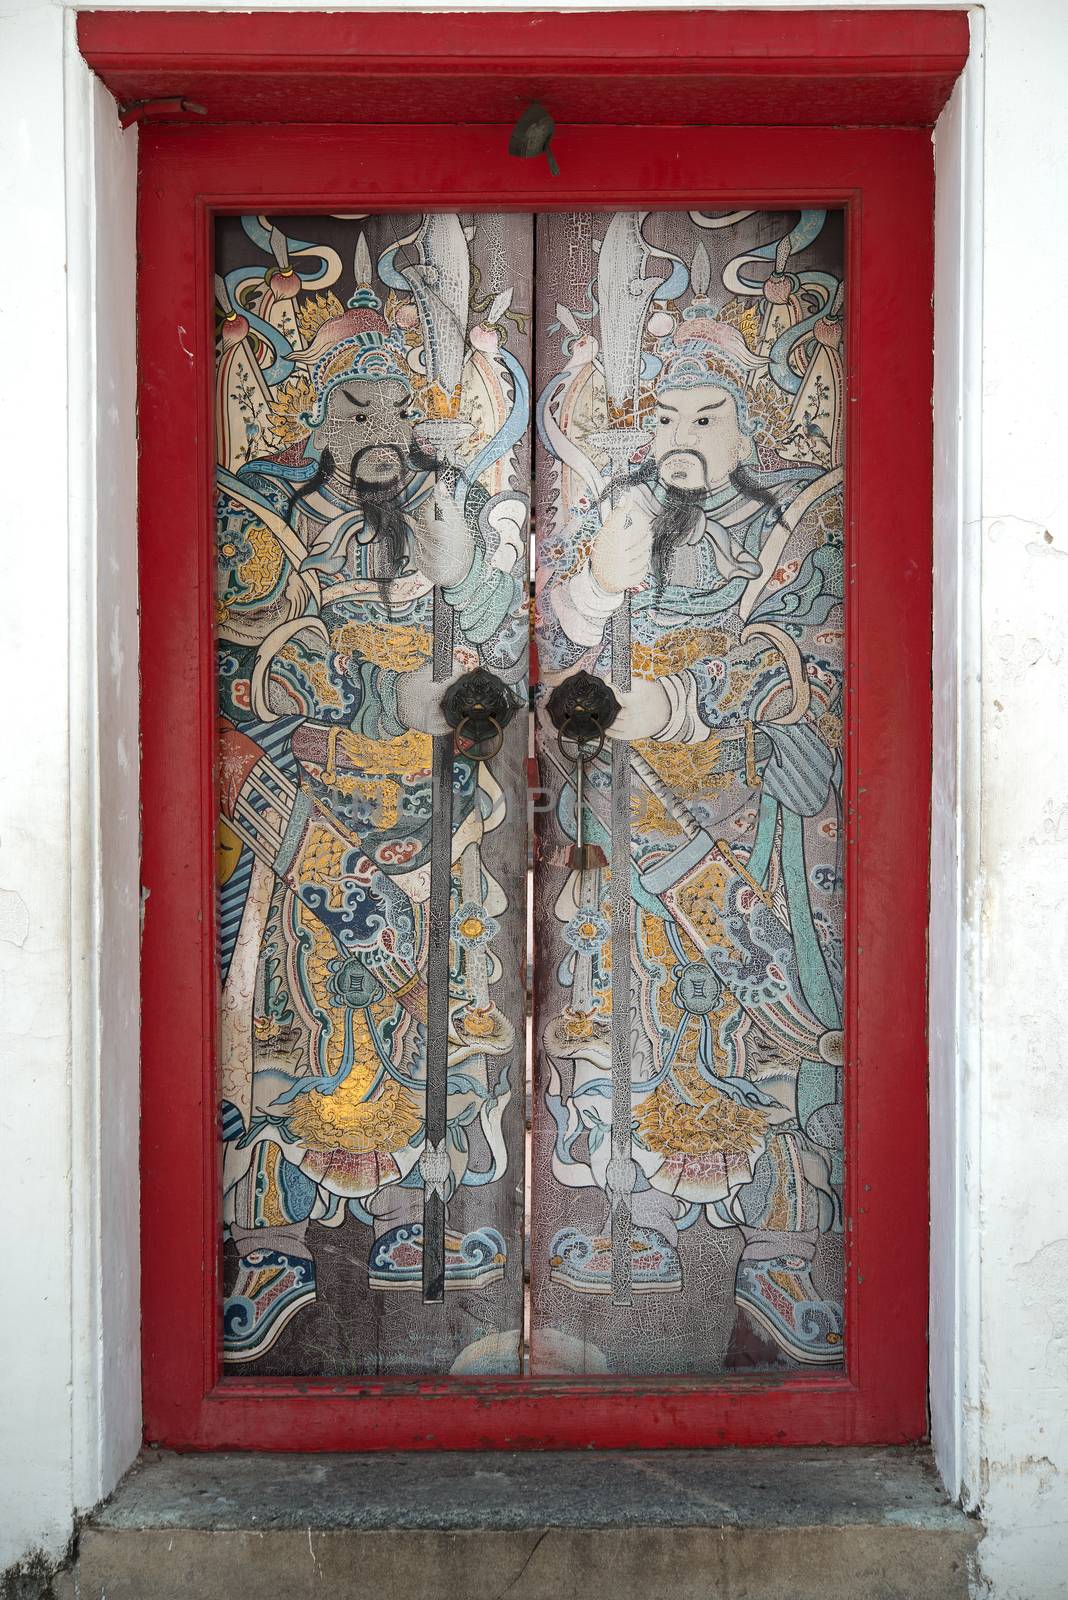 Chinese red door with Iron door handle